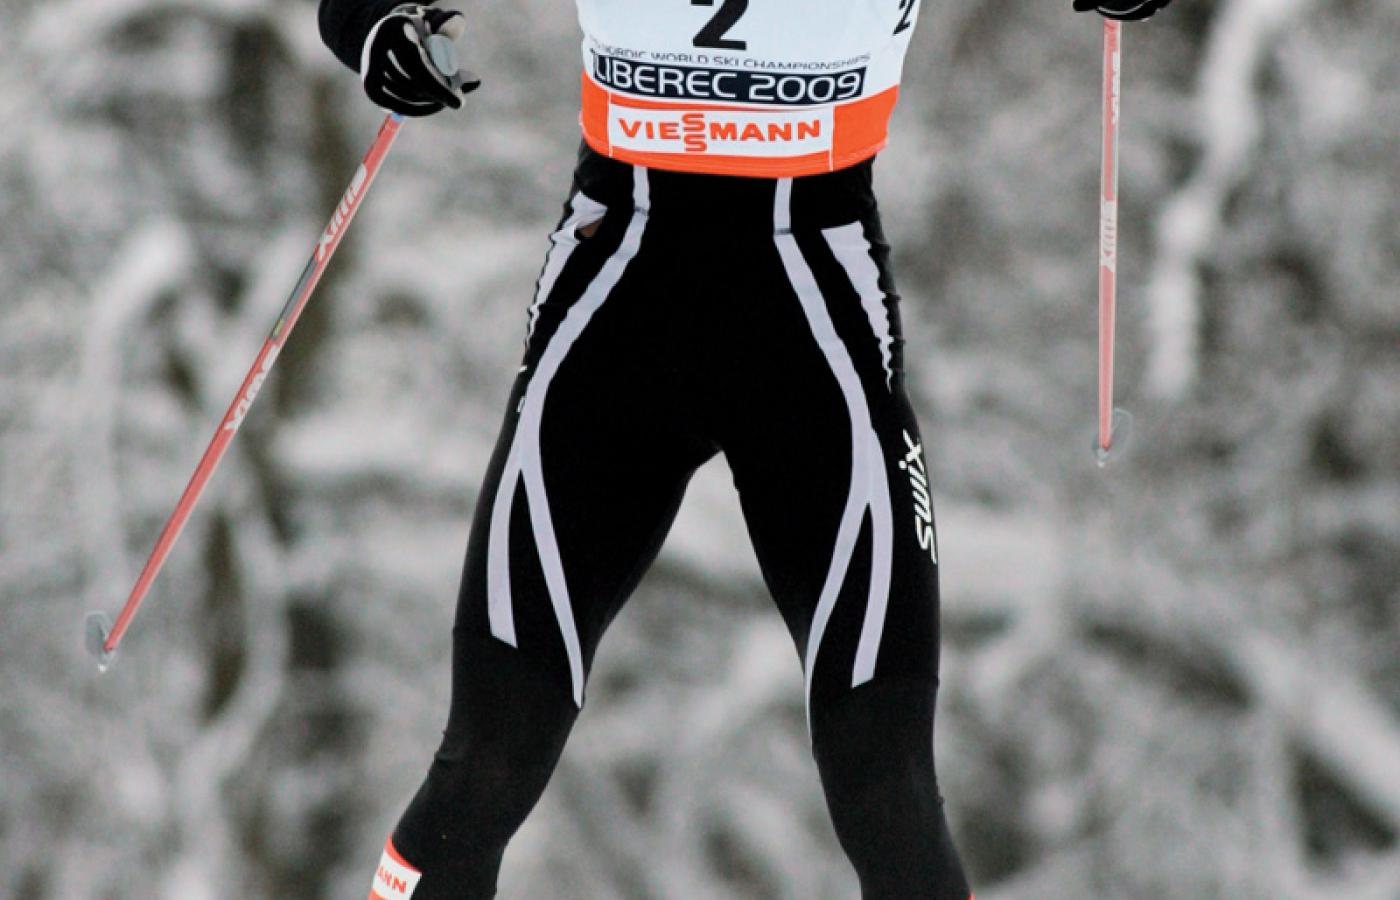 Bieg Justyny Kowalczyk po złoty medal na mistrzostwach świata w Libercu